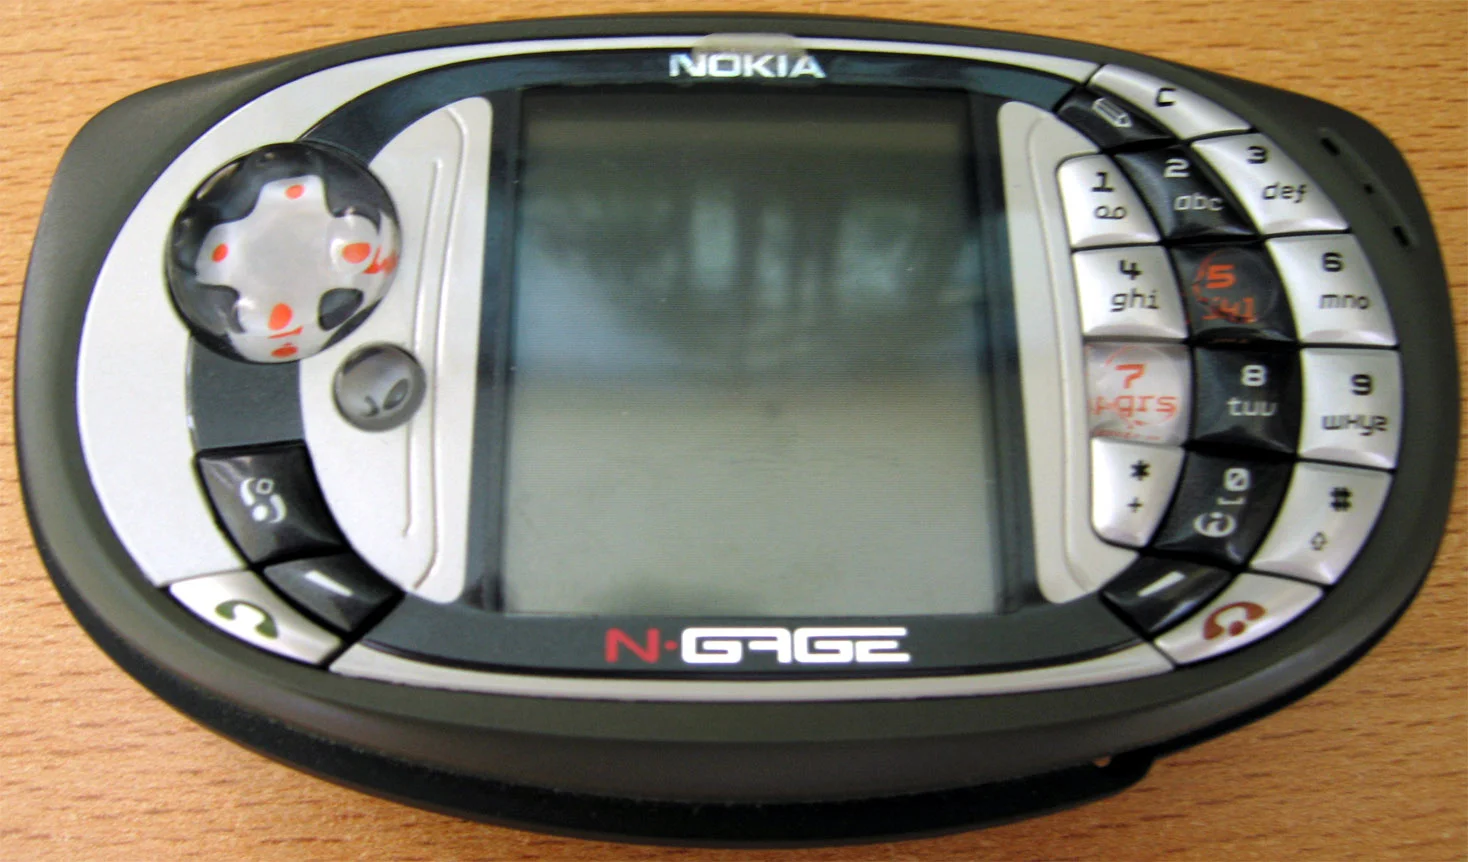 Nokia N-Gage был первым полноценным телефоном для геймеров с полноценной крестовиной. Графика потрясала, как и дизайн с ценником. Хотели все, но возможность купить была у единиц. 